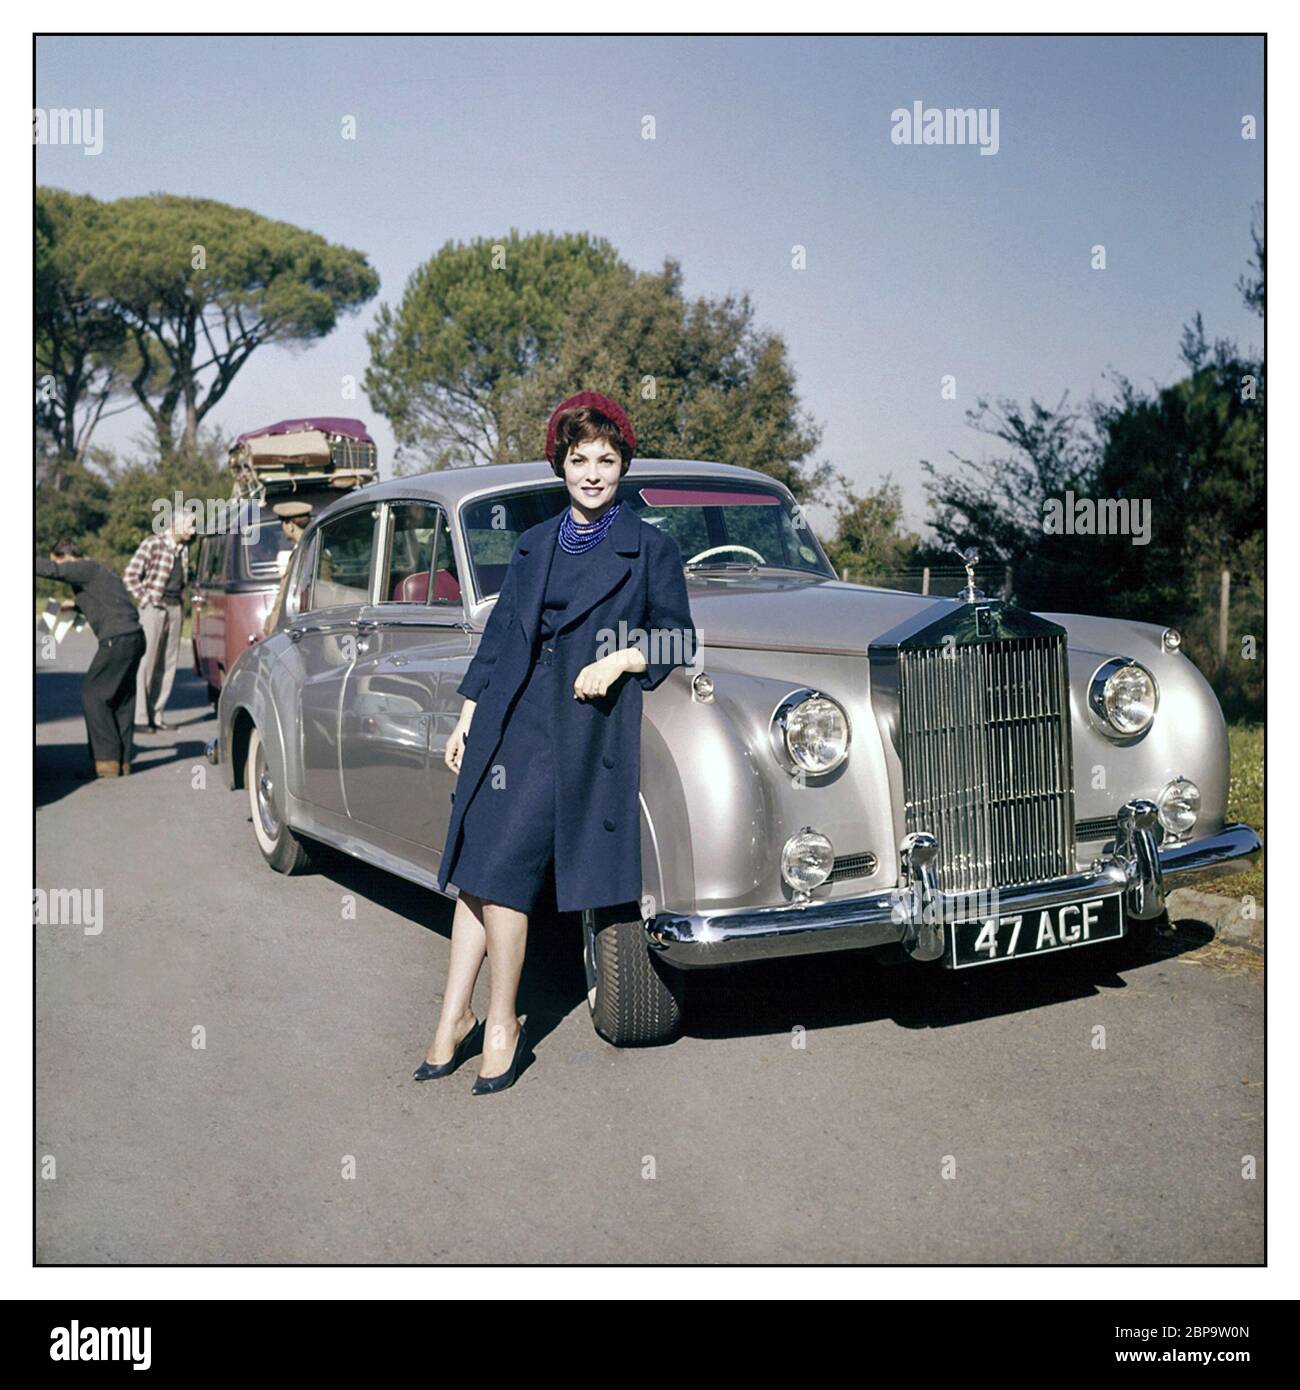 Vintage Rolls-Royce Silver Cloud I mit Besitzerin Gina Lollobrigida an einem Drehort ist Gina Lollobrigida eine italienische Schauspielerin, Fotojournalistin und Bildhauerin. Sie war eine der profiliertesten und schönsten europäischen Schauspielerinnen der 1950er/1960er Jahre Stockfoto